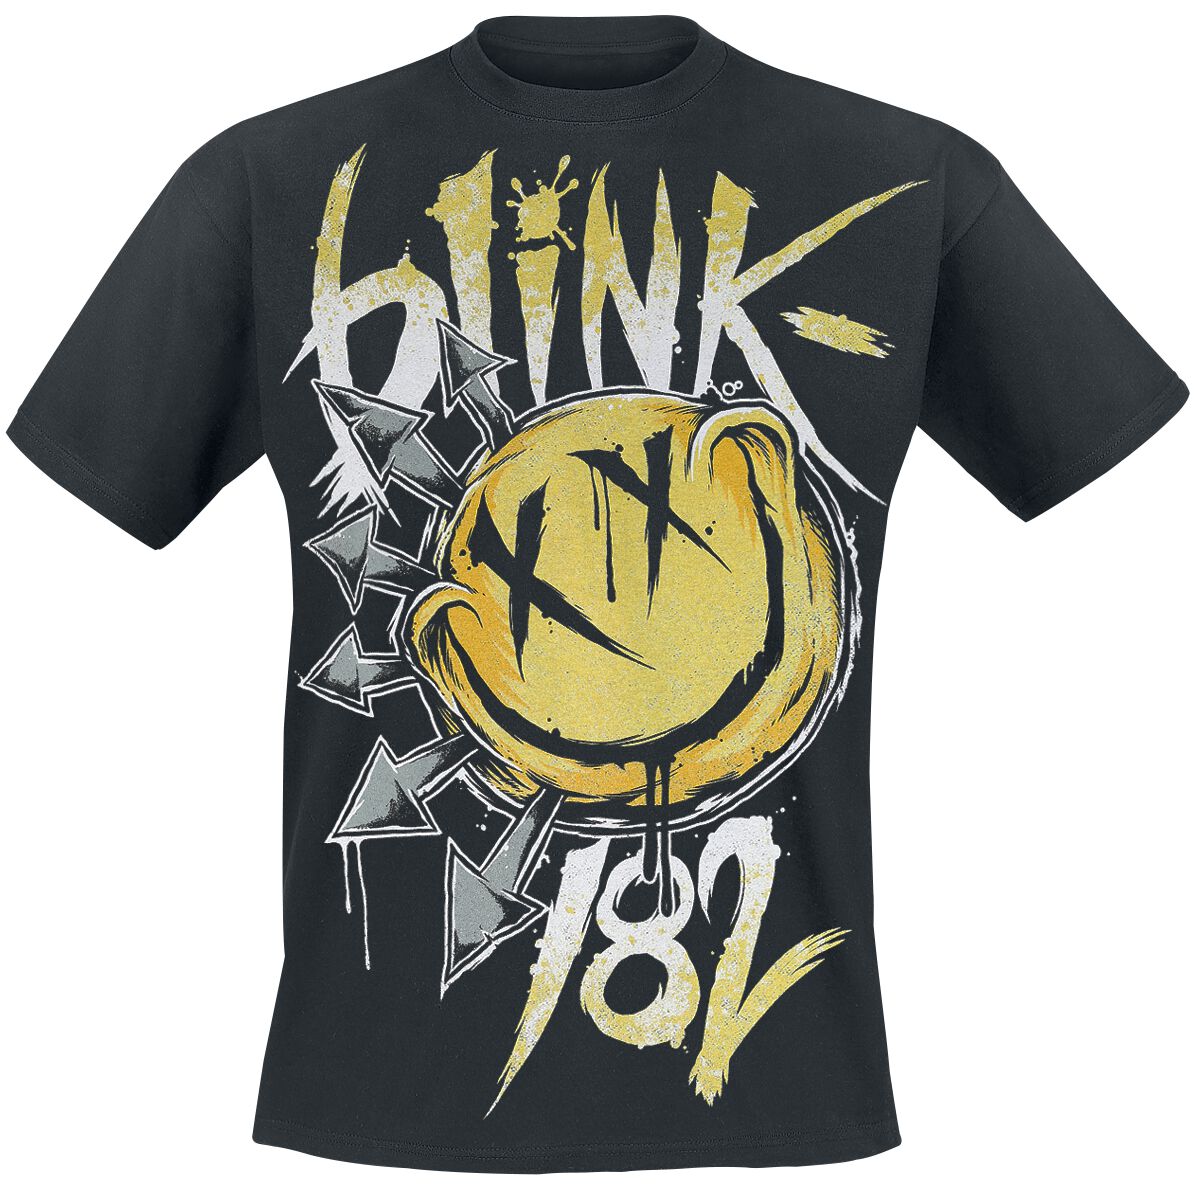 Blink-182 T-Shirt - Big Smile - S bis XXL - für Männer - Größe XL - schwarz  - Lizenziertes Merchandise!